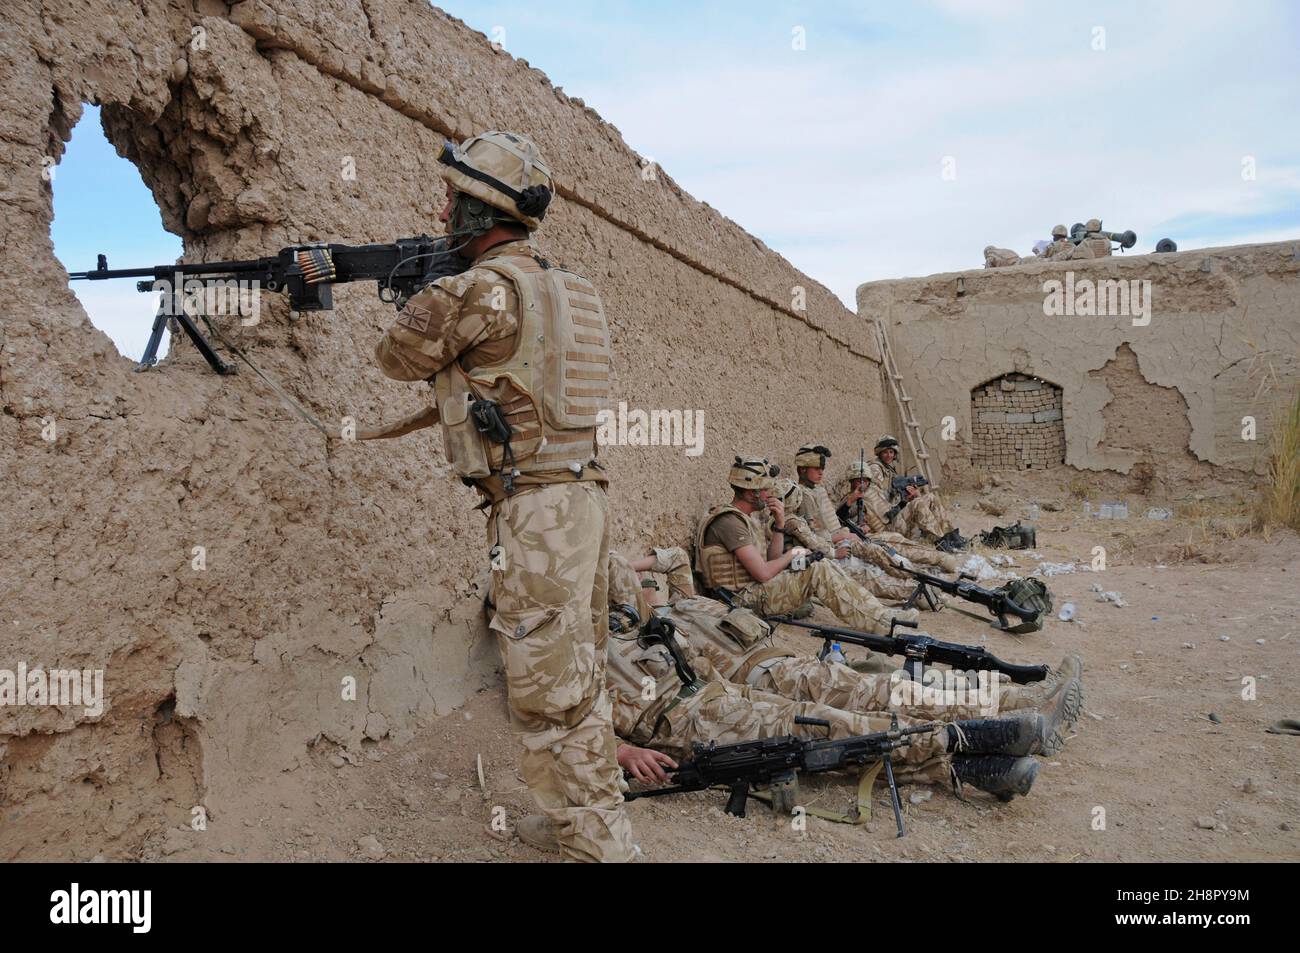 Commandant de la Marine royale britannique un poste de tireur d'élite lors de l'opération Sond Chara défrichant nad-e Ali District, province Helmand des insurgés le 30 décembre 2008 à Lashkar Gah, en Afghanistan. Banque D'Images